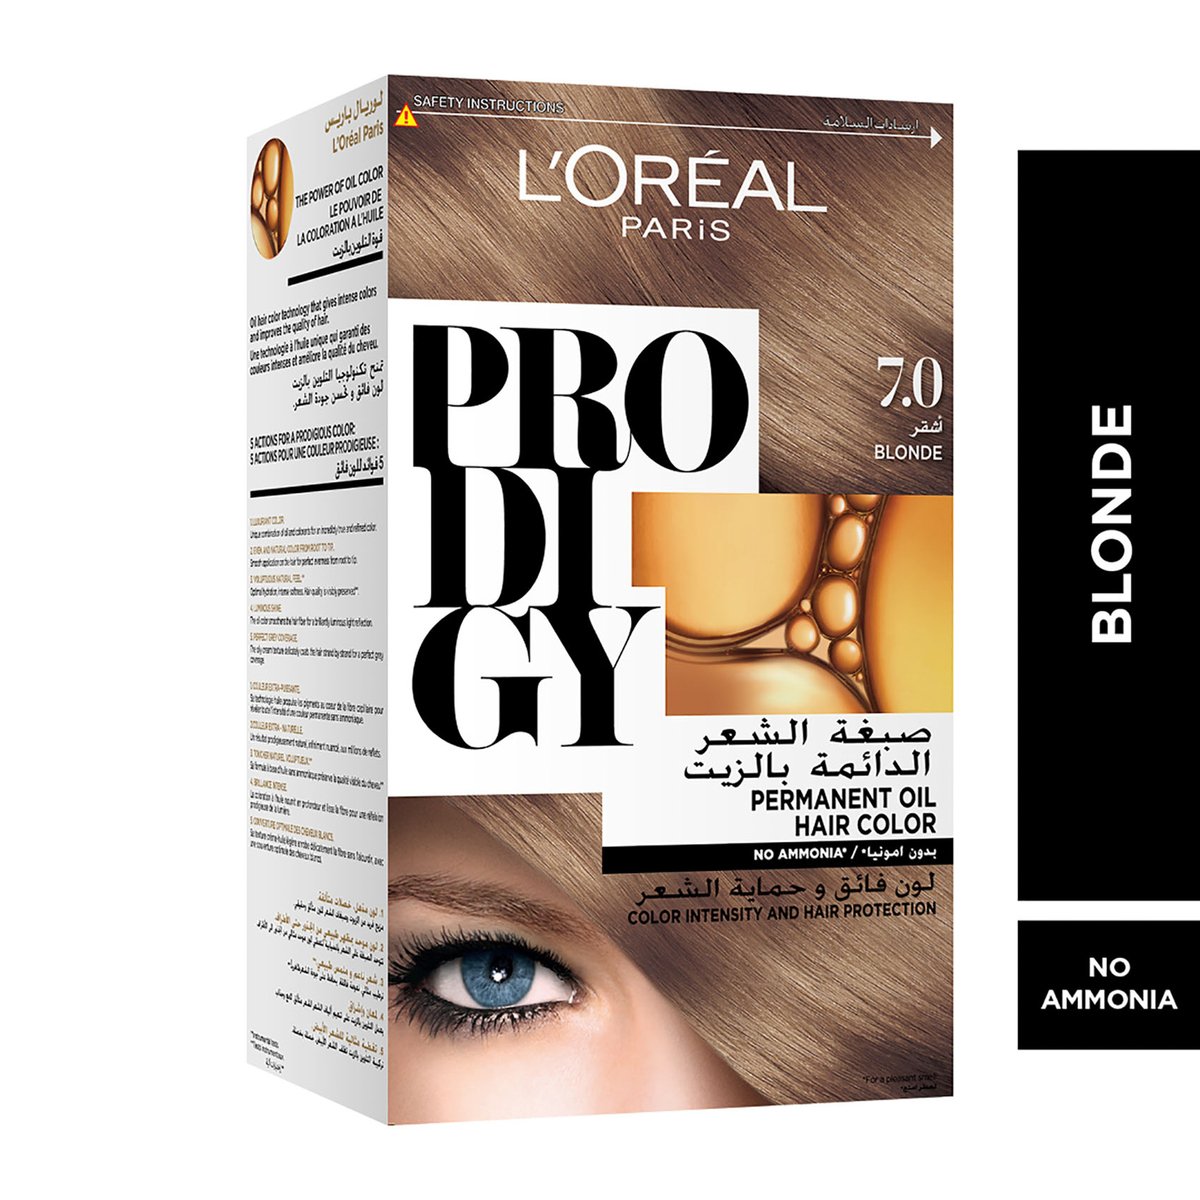 L'Oreal Paris Prodigy Hair Color 7.0 Blonde 1 pkt